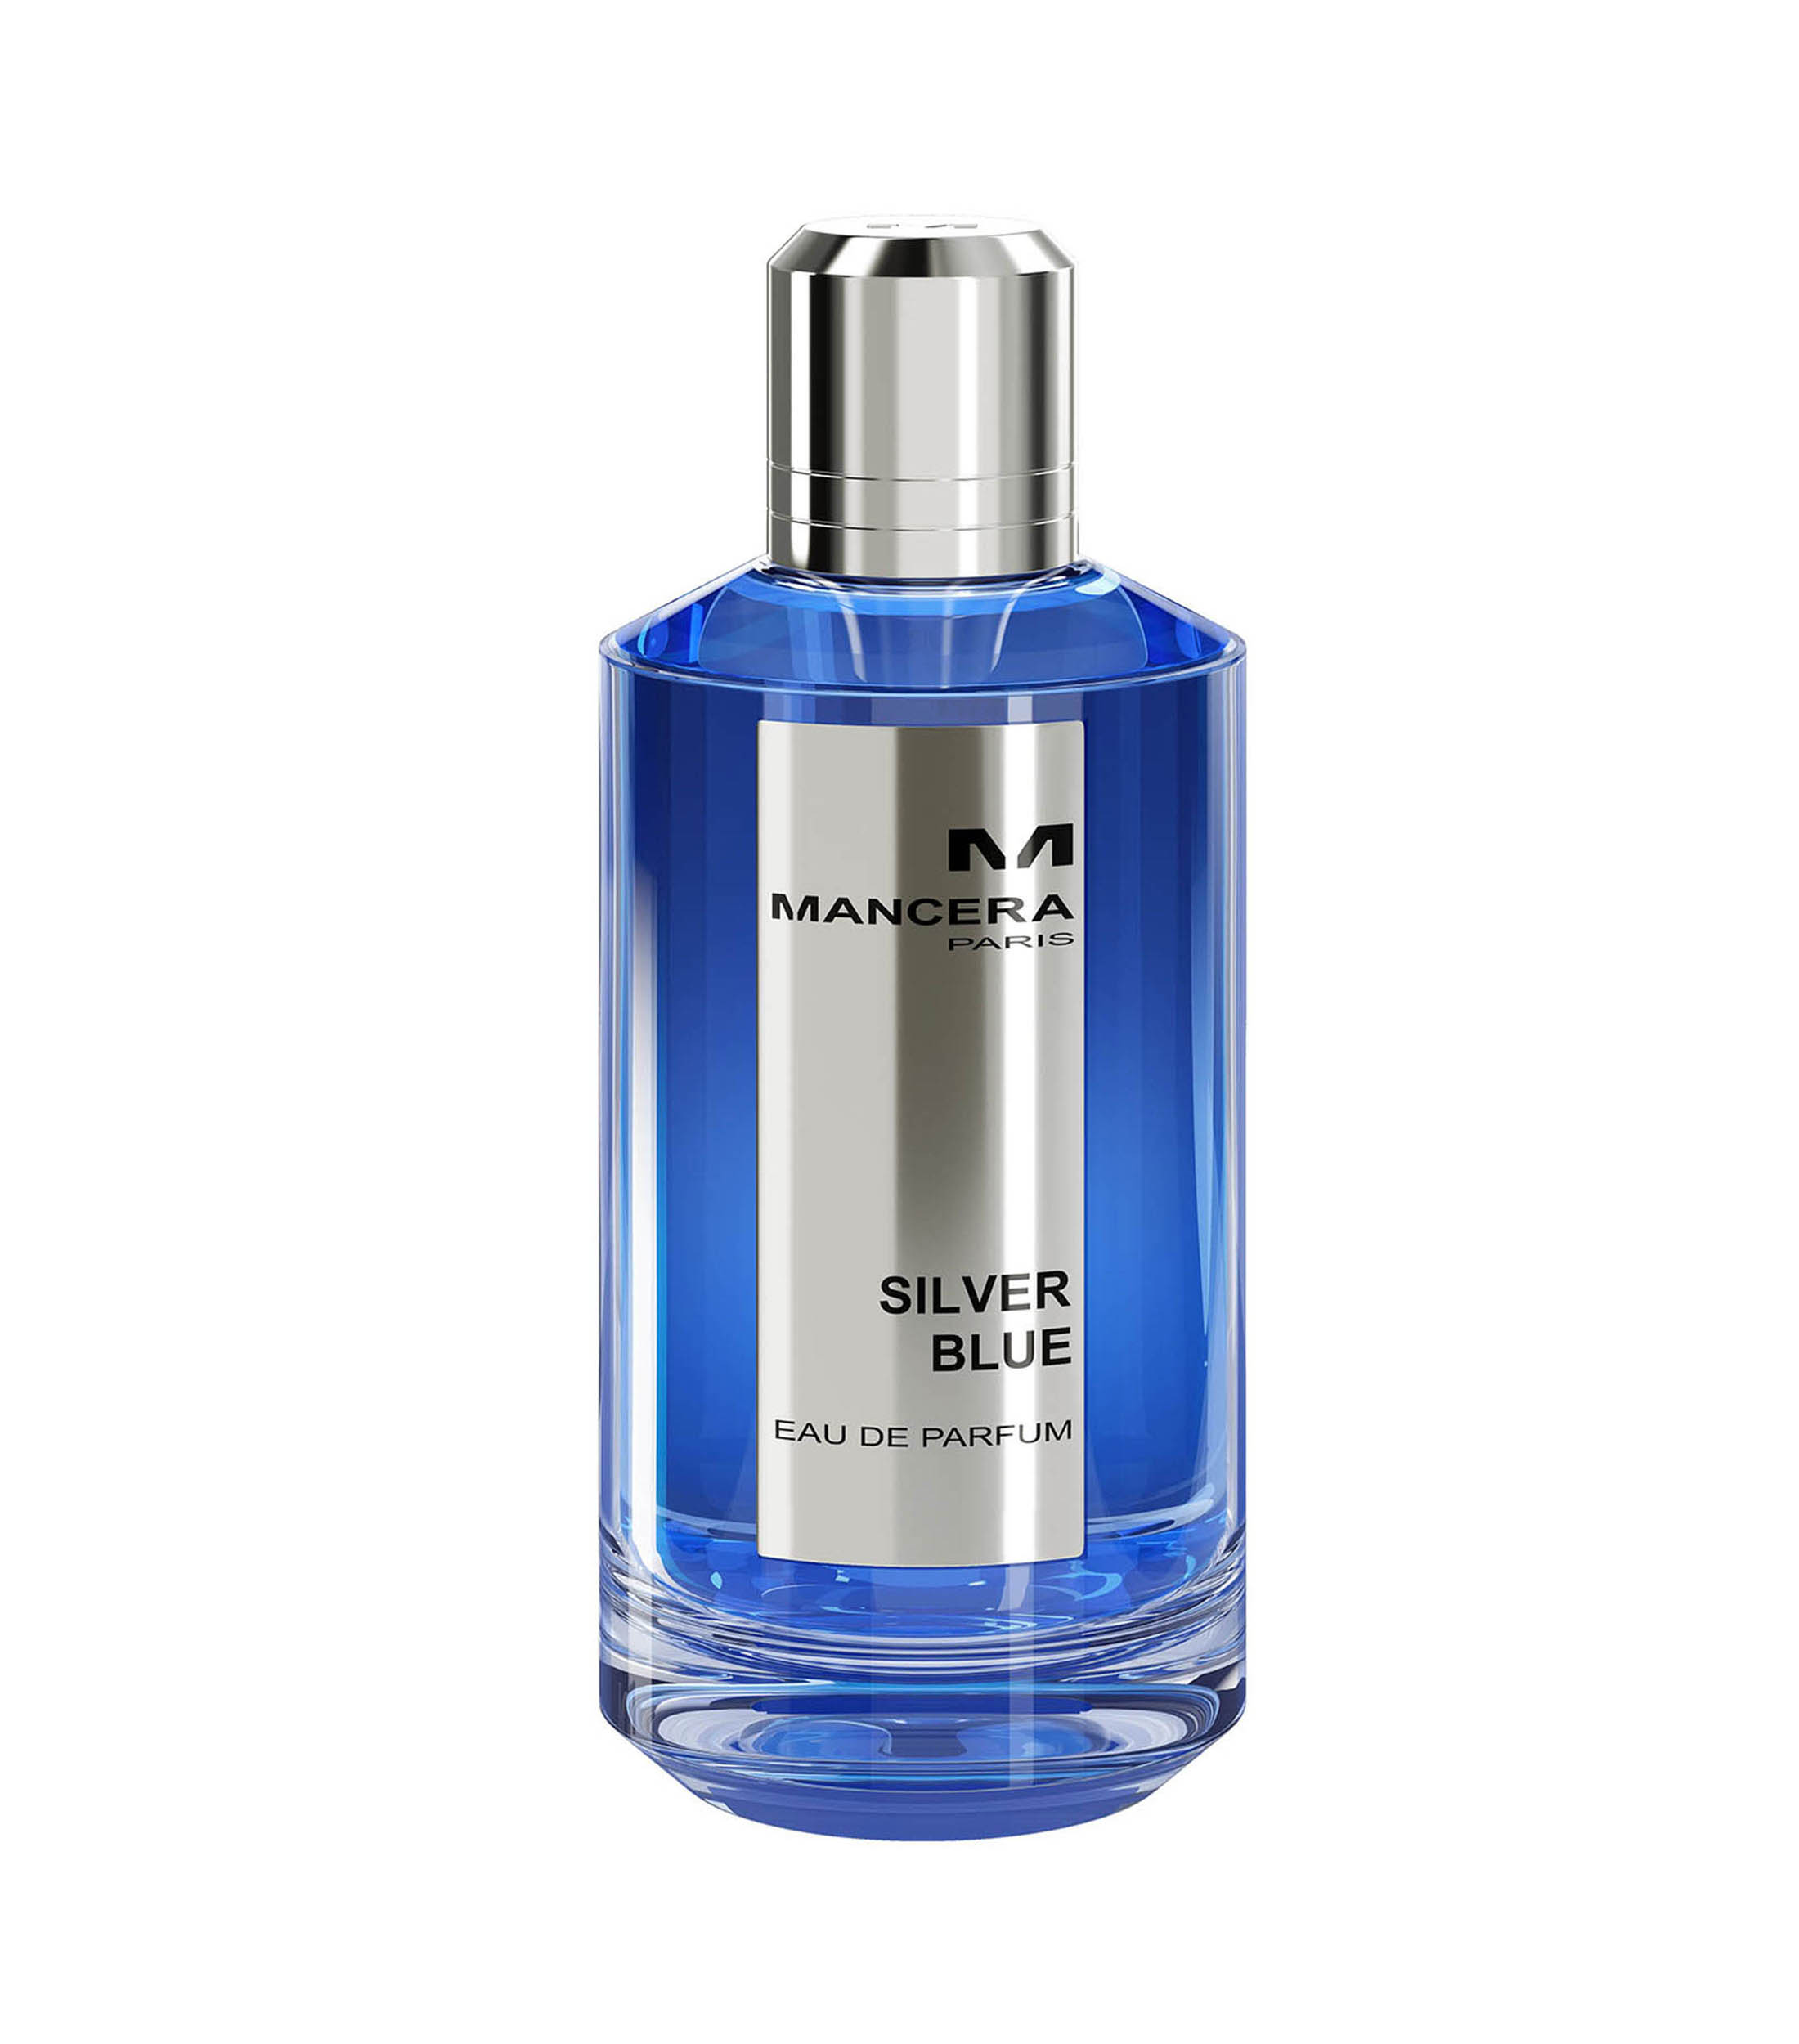 Mancera Perfume, Silver Blue Eau de Parfum, 120 ml Hombre - El Palacio ...